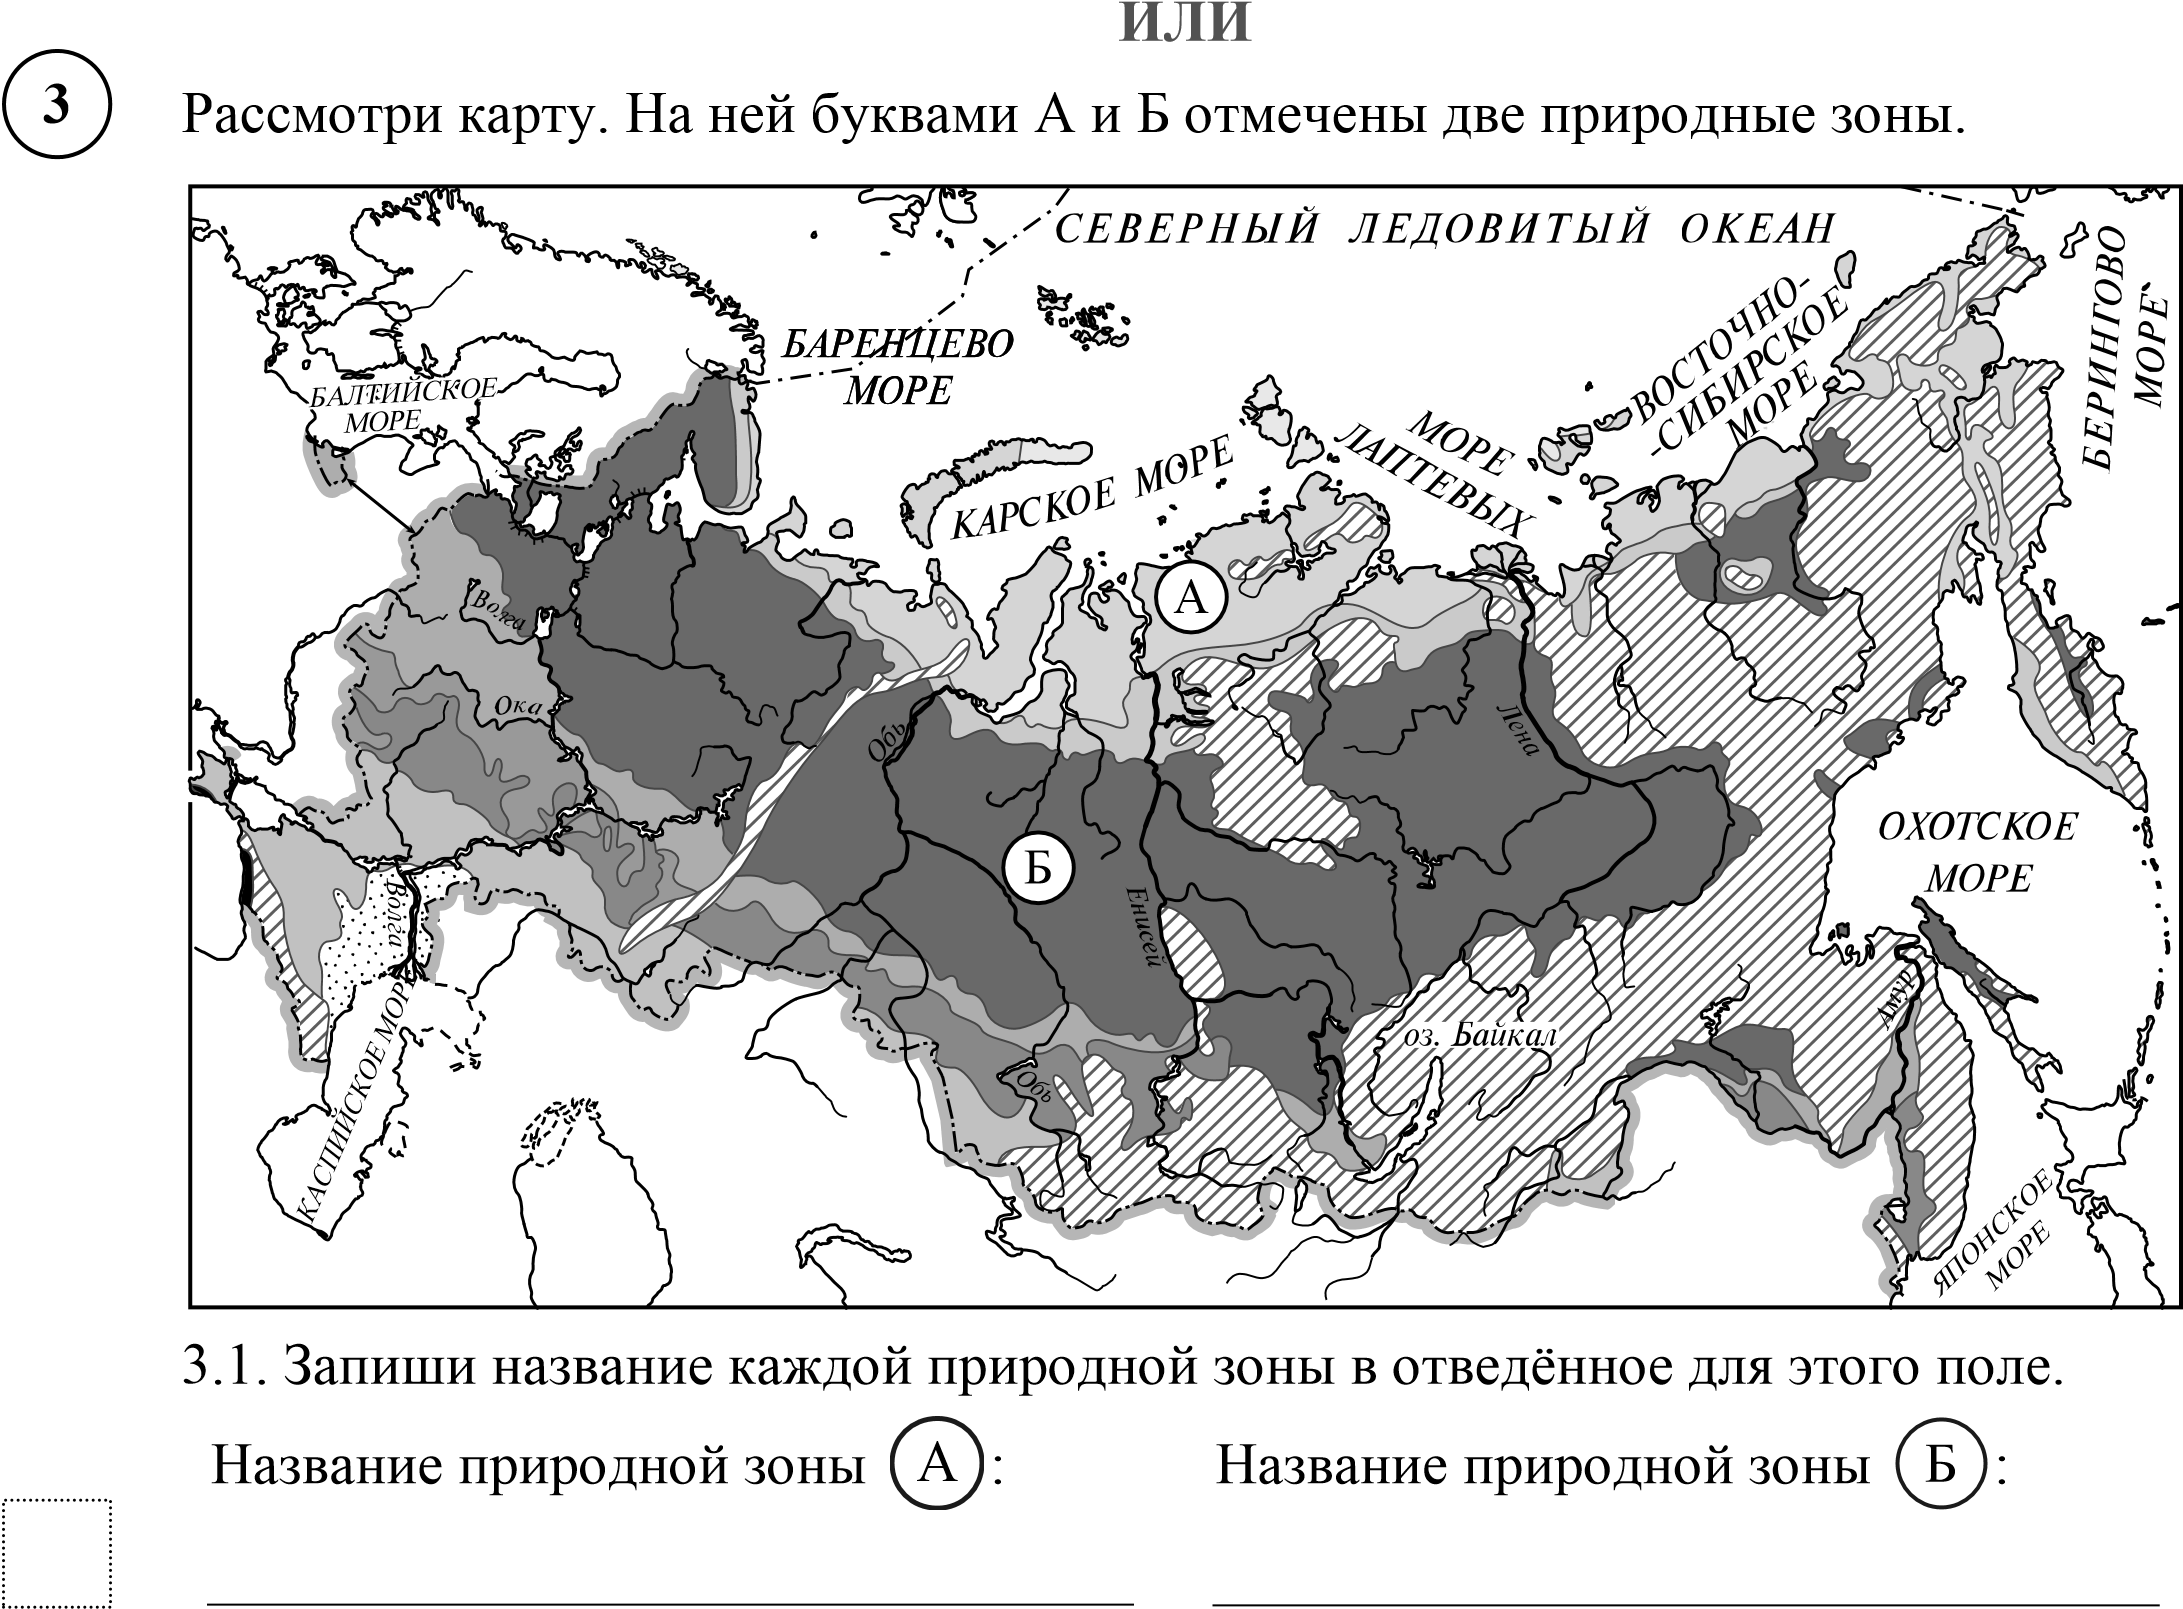 Карта природных зон России ВПР. Карта природных зон России 4 класс окружающий мир без названий. Природные зоны России 4 класс окружающий мир черно белая карта. Карта природных зон России 4 класс черно белая.